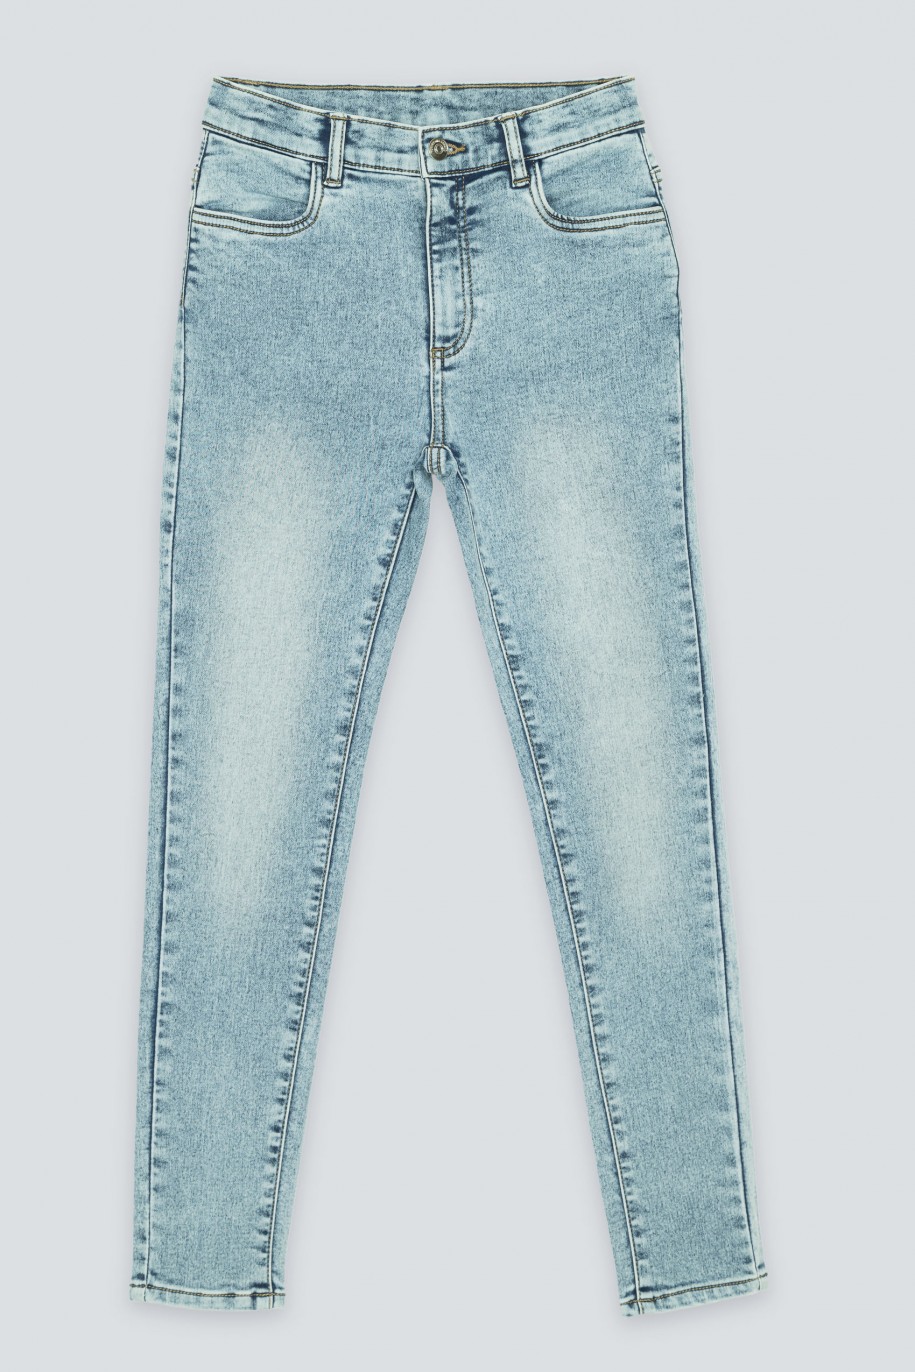 Niebieskie jeansy typu rurki - 40880